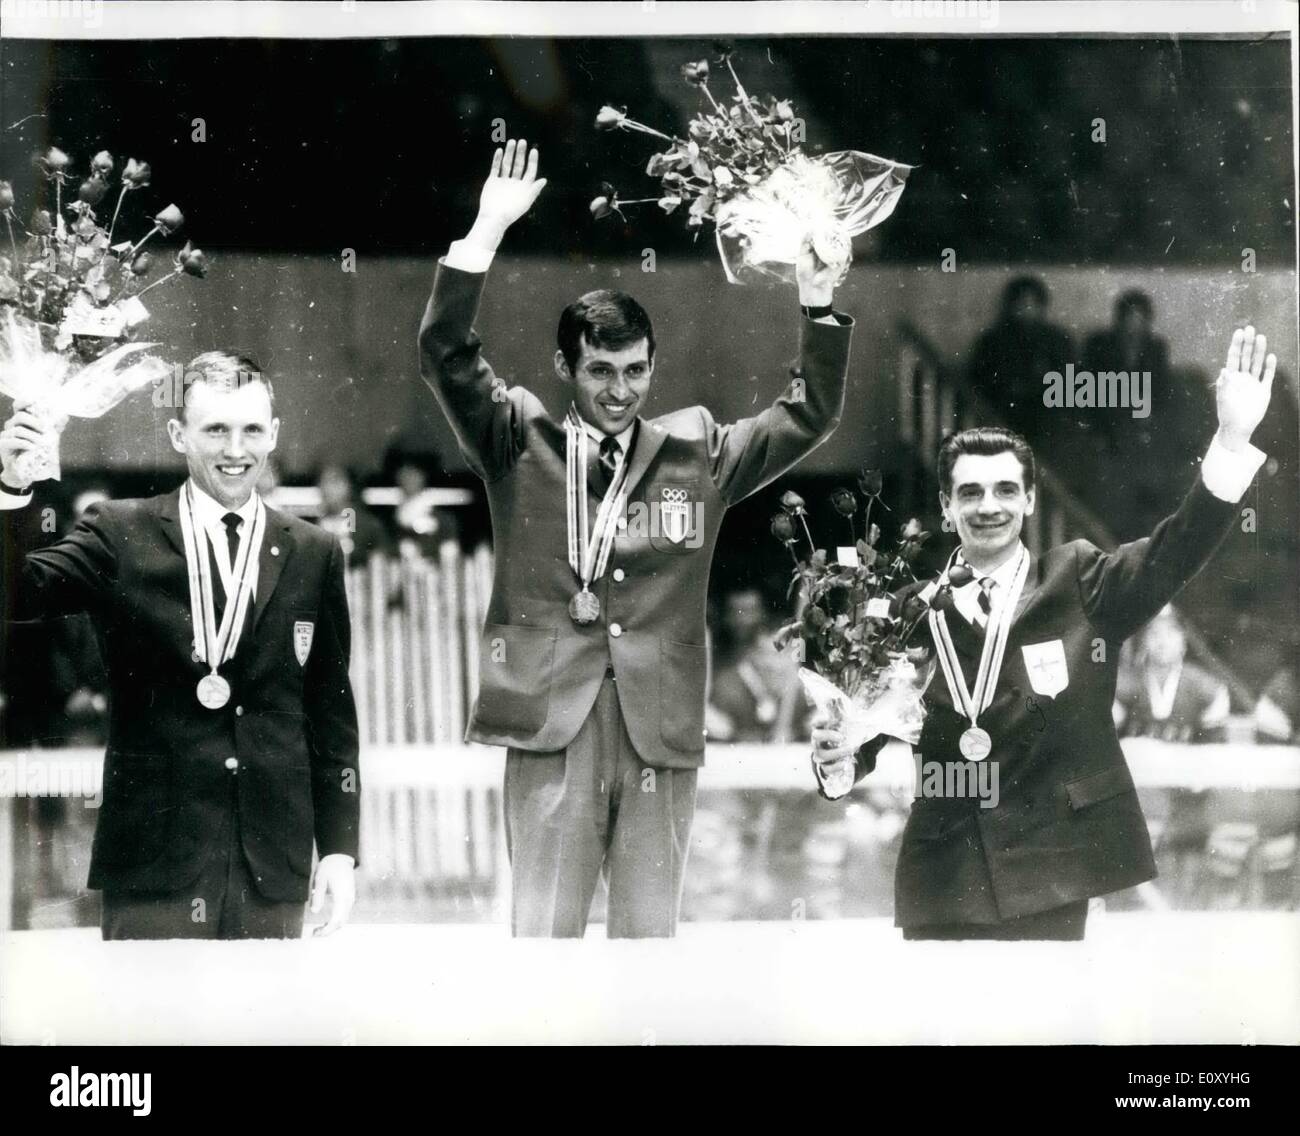 10 févr. 02, 1968 - Médaille d'or pour l'Italie aux Jeux Olympiques d'hiver : la première médaille d'or des Jeux Olympiques d'hiver est allé en Italie, quand Noomes Franco a remporté le 30 kilomètres de course de cross-country à autrichiens. O. Martinsen de Norvège a été deuxième et E. Maentryanta de Finlande, est troisième. Photo montre : qui est représenté sur la tribune après le veent sont F. nomes, de l'Italie (au centre), le gagnant ; D. Martinsen, de la Norvège (à gauche) qui a pris le deuxième rang, et E., Maentyranta de Finlande (à droite), qui a terminé troisième. Banque D'Images